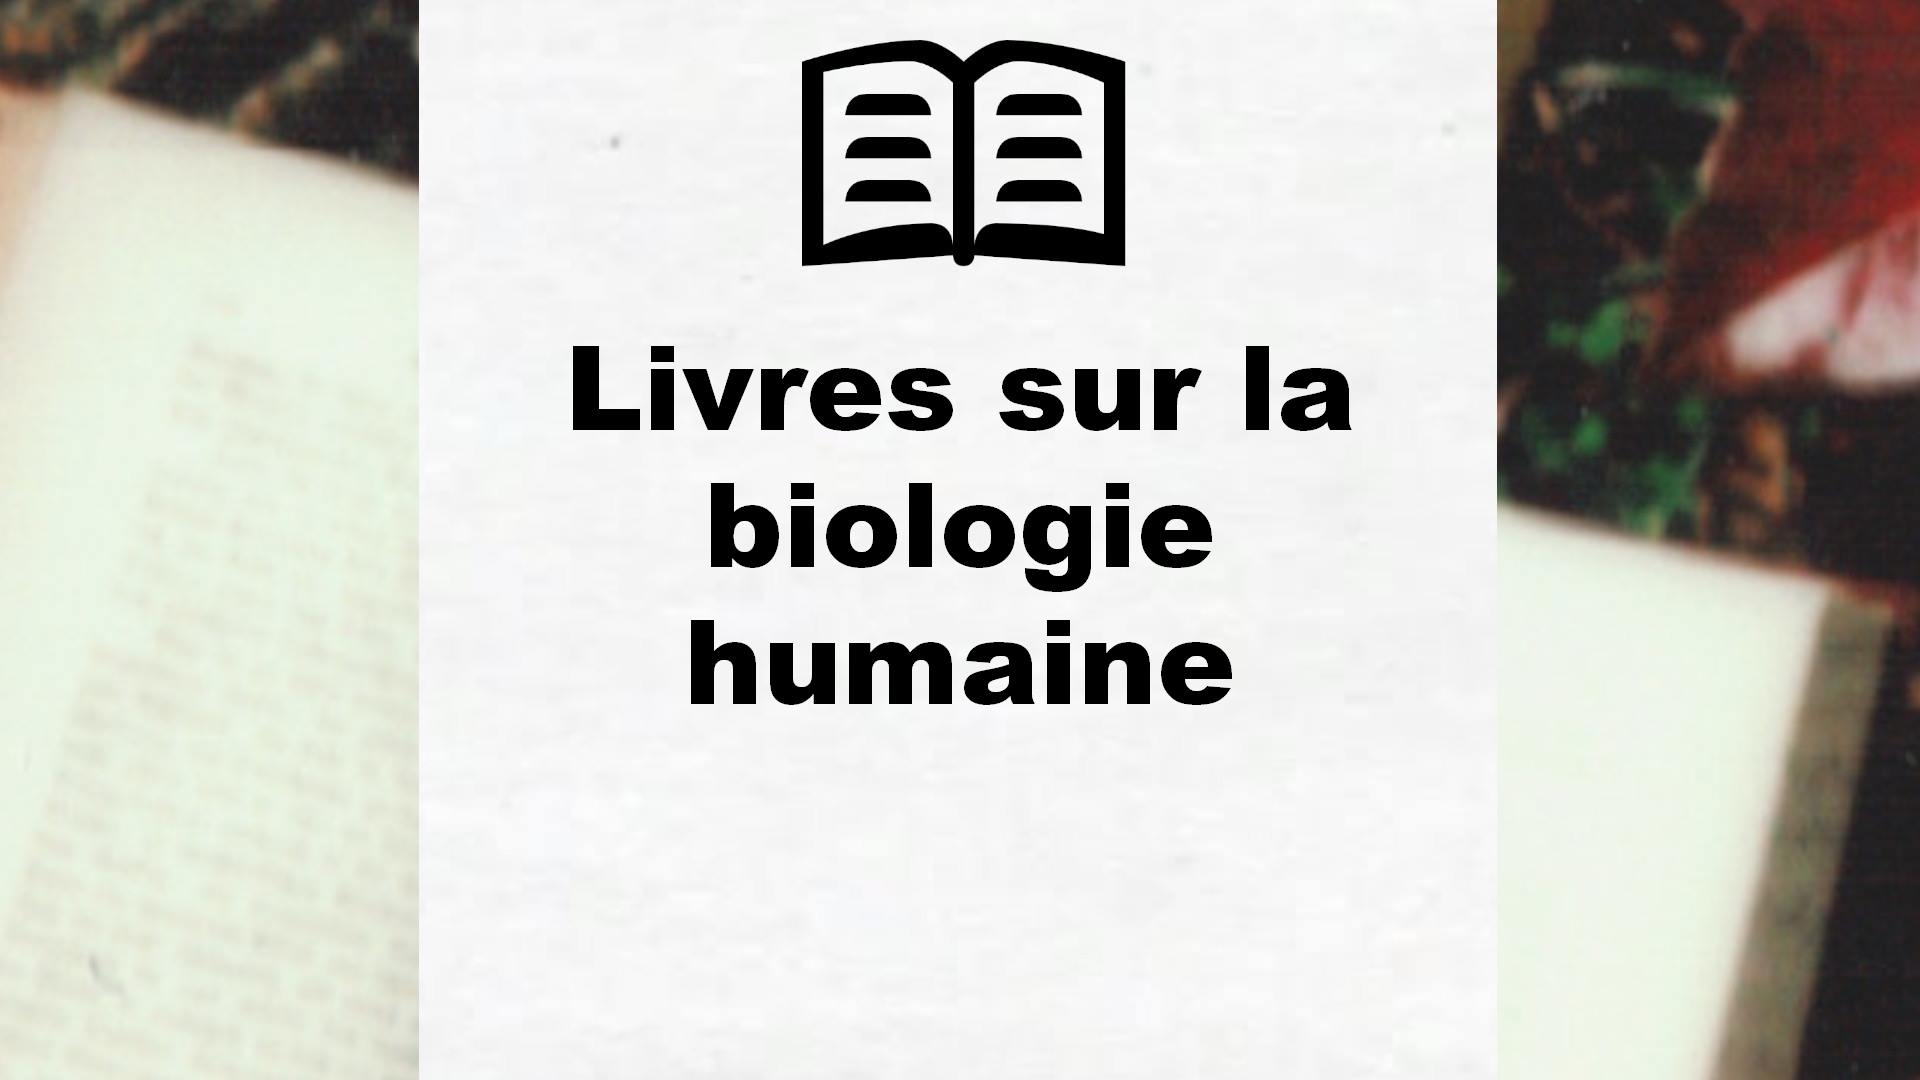 Livres sur la biologie humaine